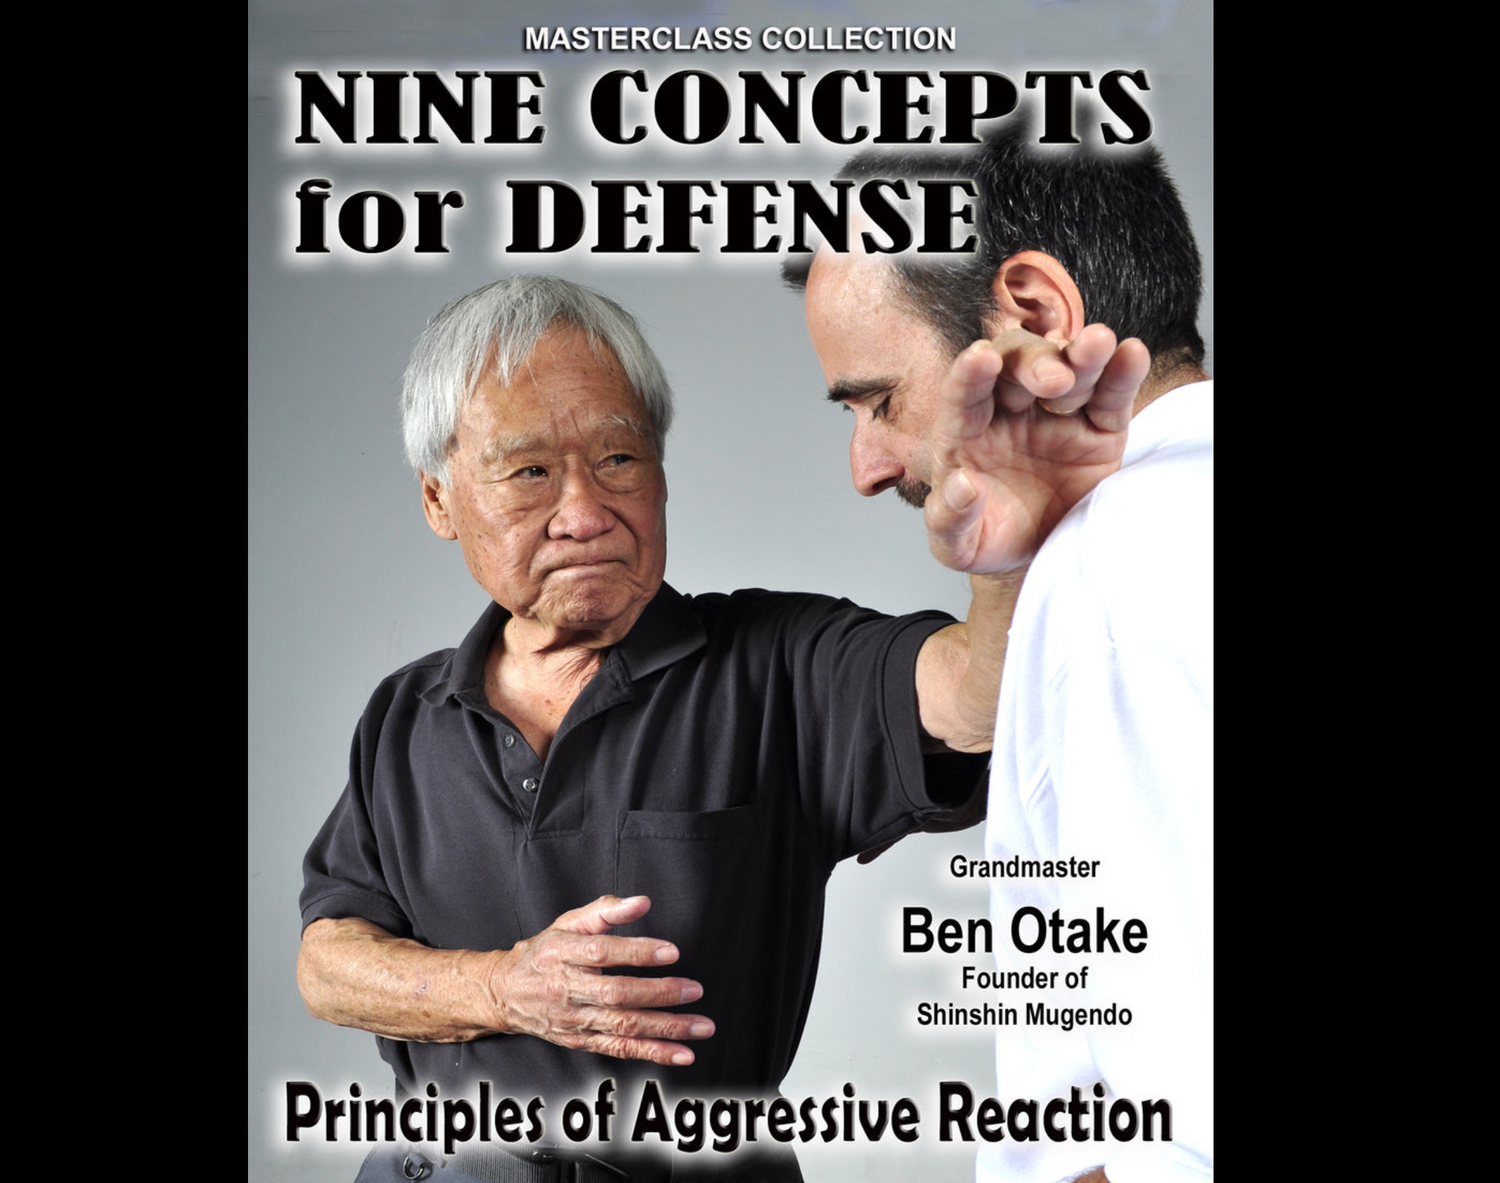 Nueve conceptos para la autodefensa de Ben Otake (bajo demanda)